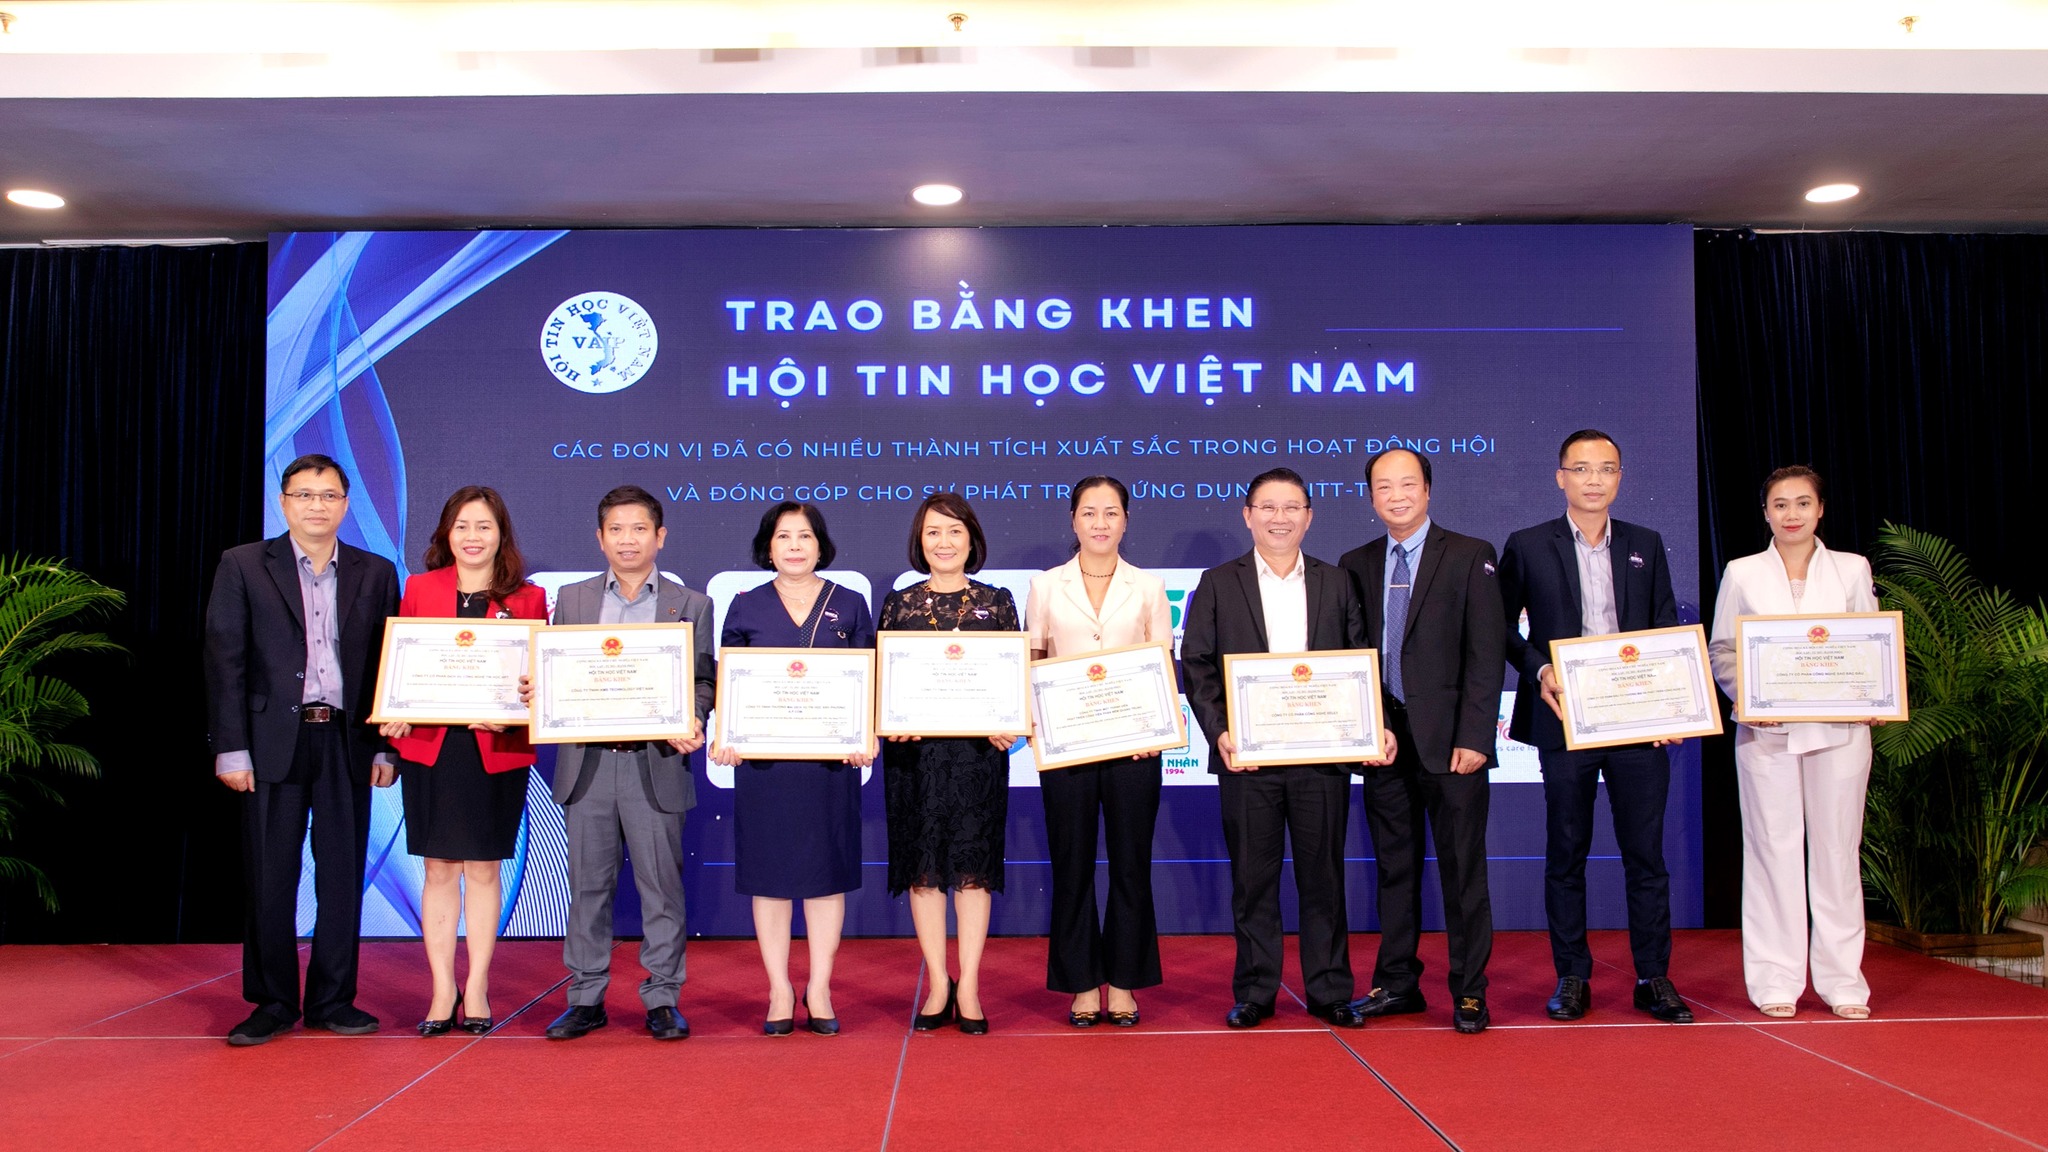 Sao Bắc Đẩu nhận bằng khen từ Hội tin học Việt Nam tại chương trình Họp mặt đầu năm - Giao lưu, kết nối doanh nghiệp 2023